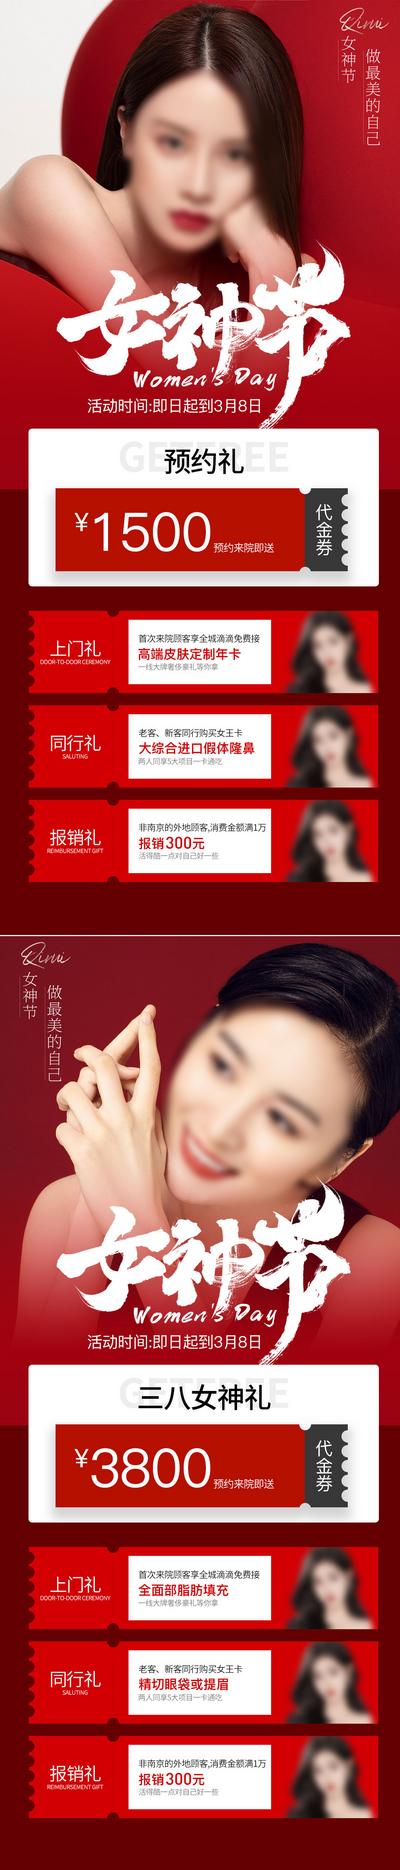 南门网 广告 海报 医美 女神节 人物 整形 公历节B. 三八 妇女节 特惠 系列